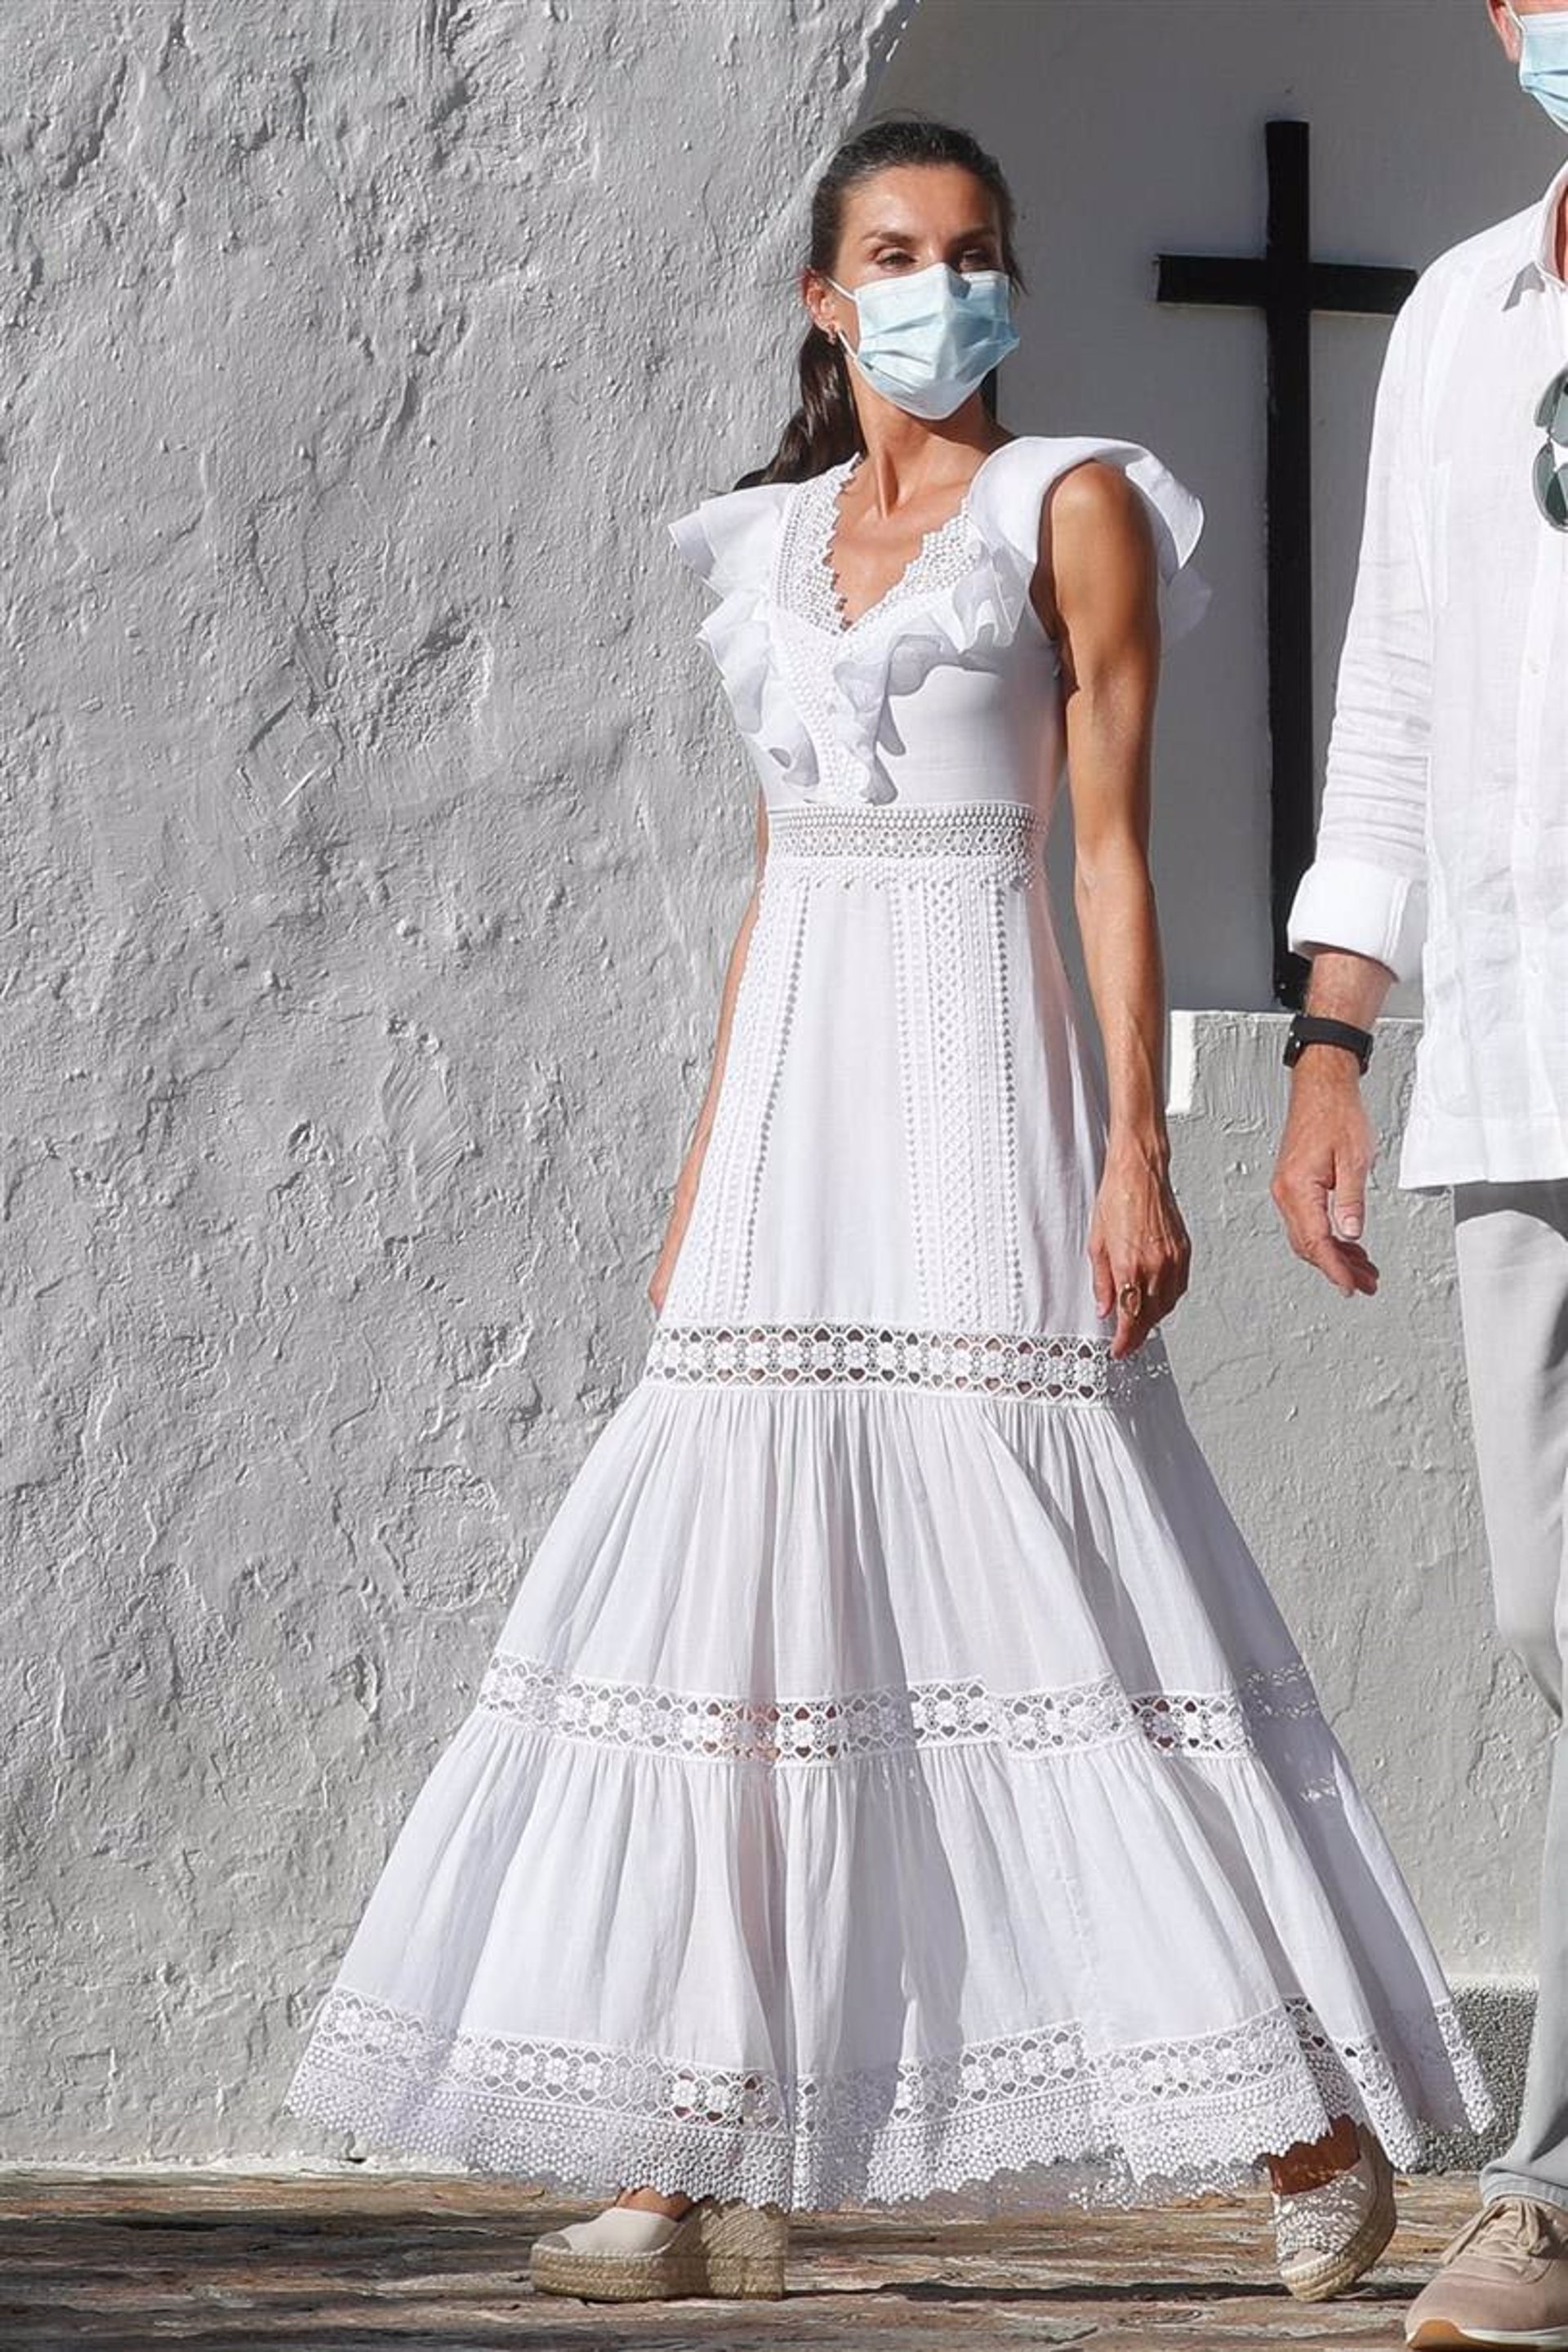 La Reina Letizia lució el vestido de Charo Ruiz en 2020